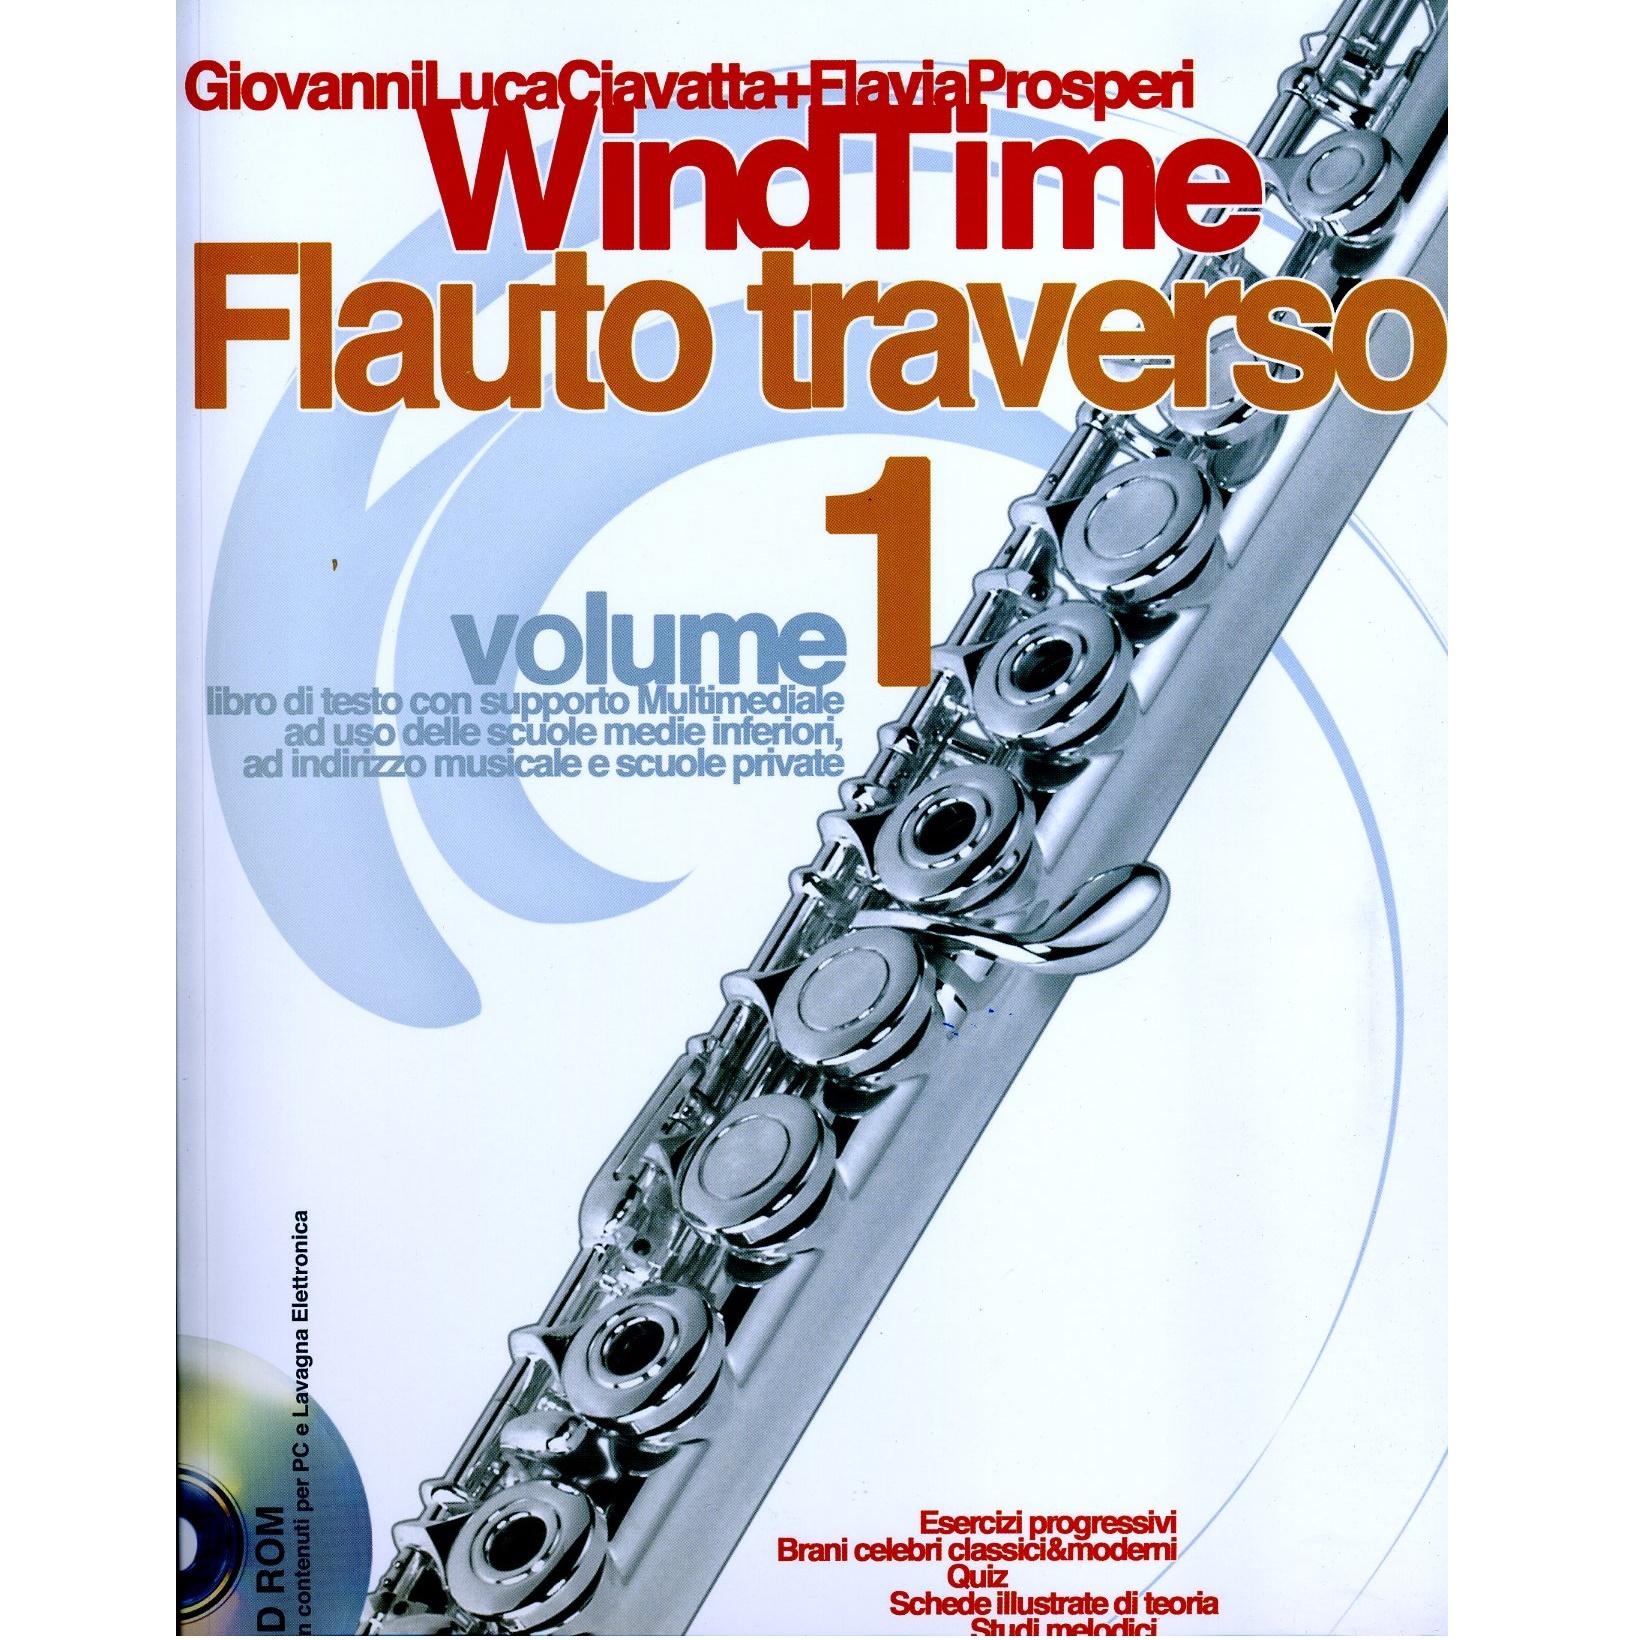 WindTime Flauto traverso volume 1 - Carisch